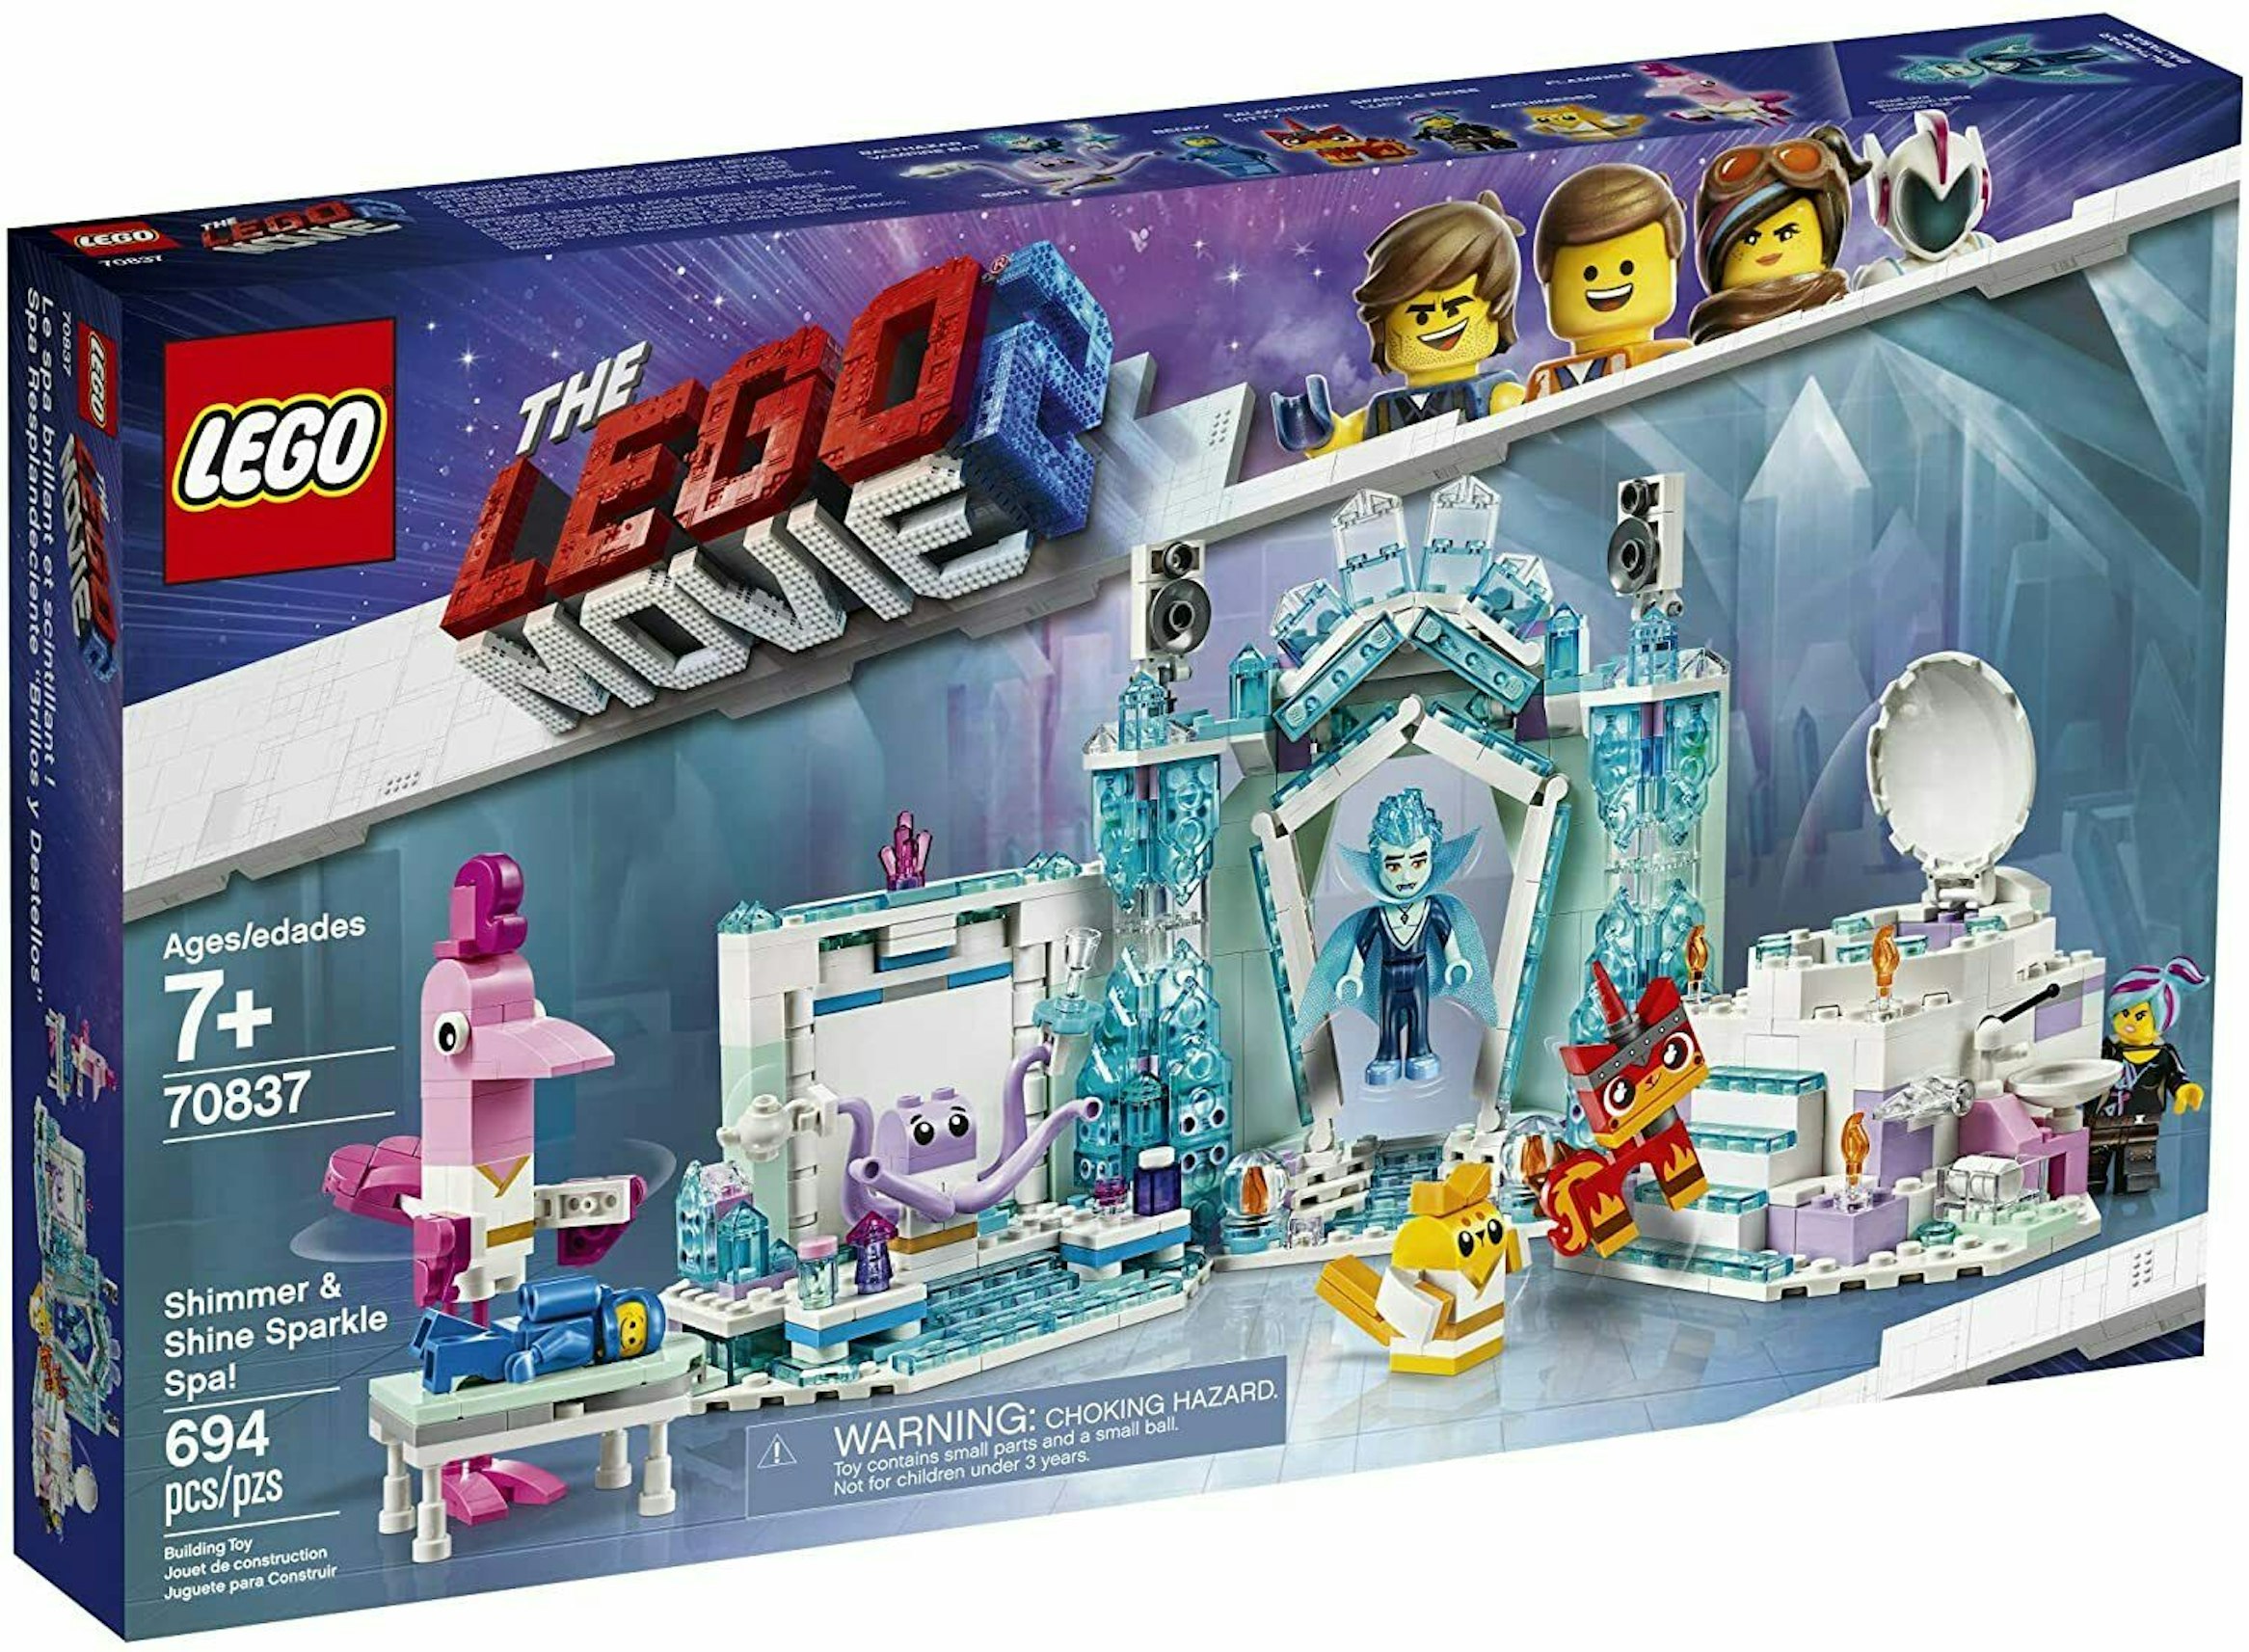 Trampe Rasende Sprællemand LEGO The LEGO Movie 2 Shimmer & Shine Sparkle Spa! Set 70837 - US